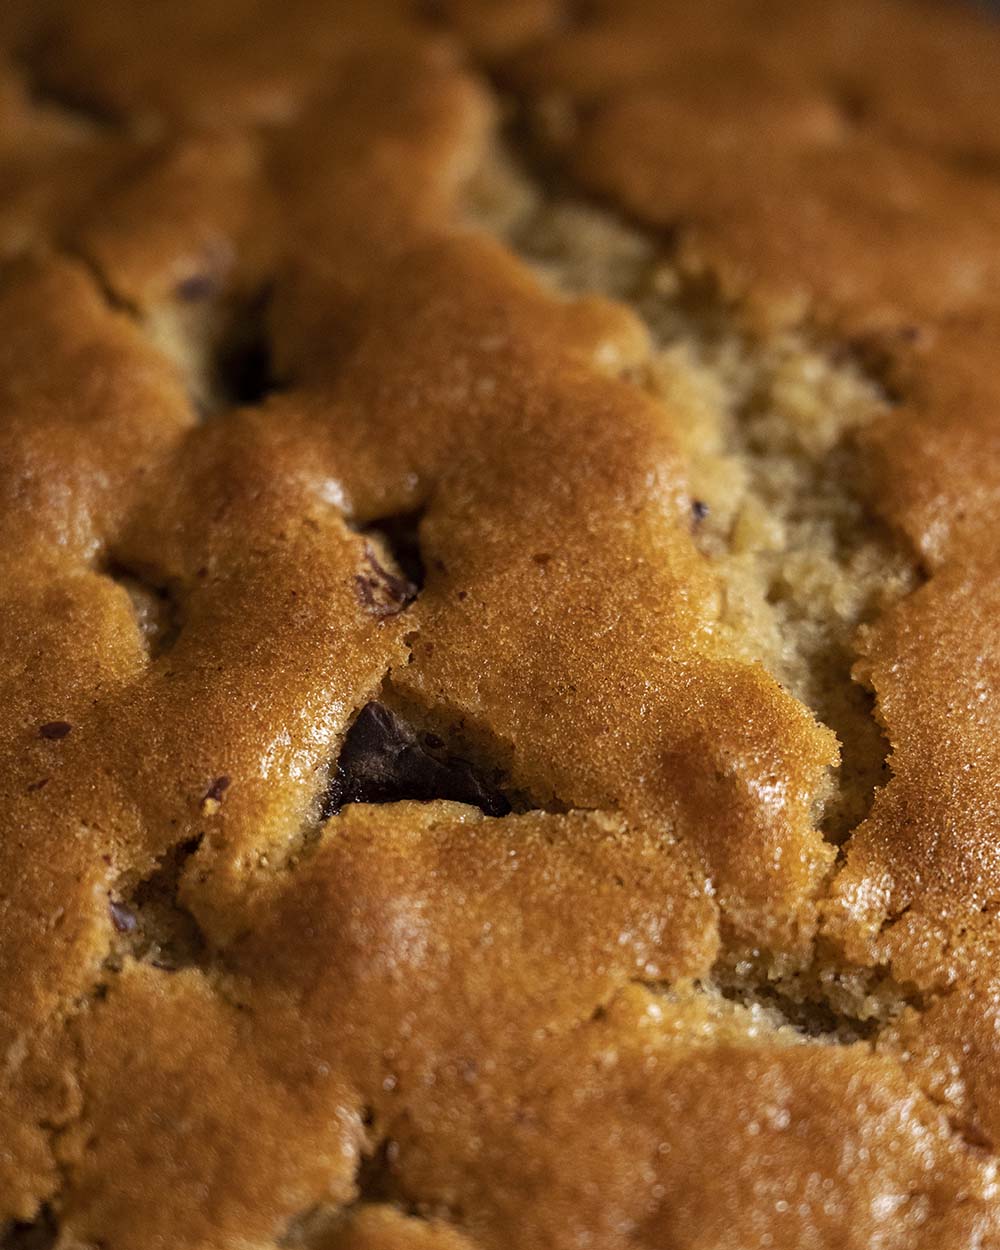 Nahaufnahme des fertig gebackenen Rührteigs für unseren Birnnkuchen mit Zimt und Schokolade. Ausgekühlt belegen wir ihn mit pochierten Birnen und verzieren ihn mit geschmolzener Kuvertüre.